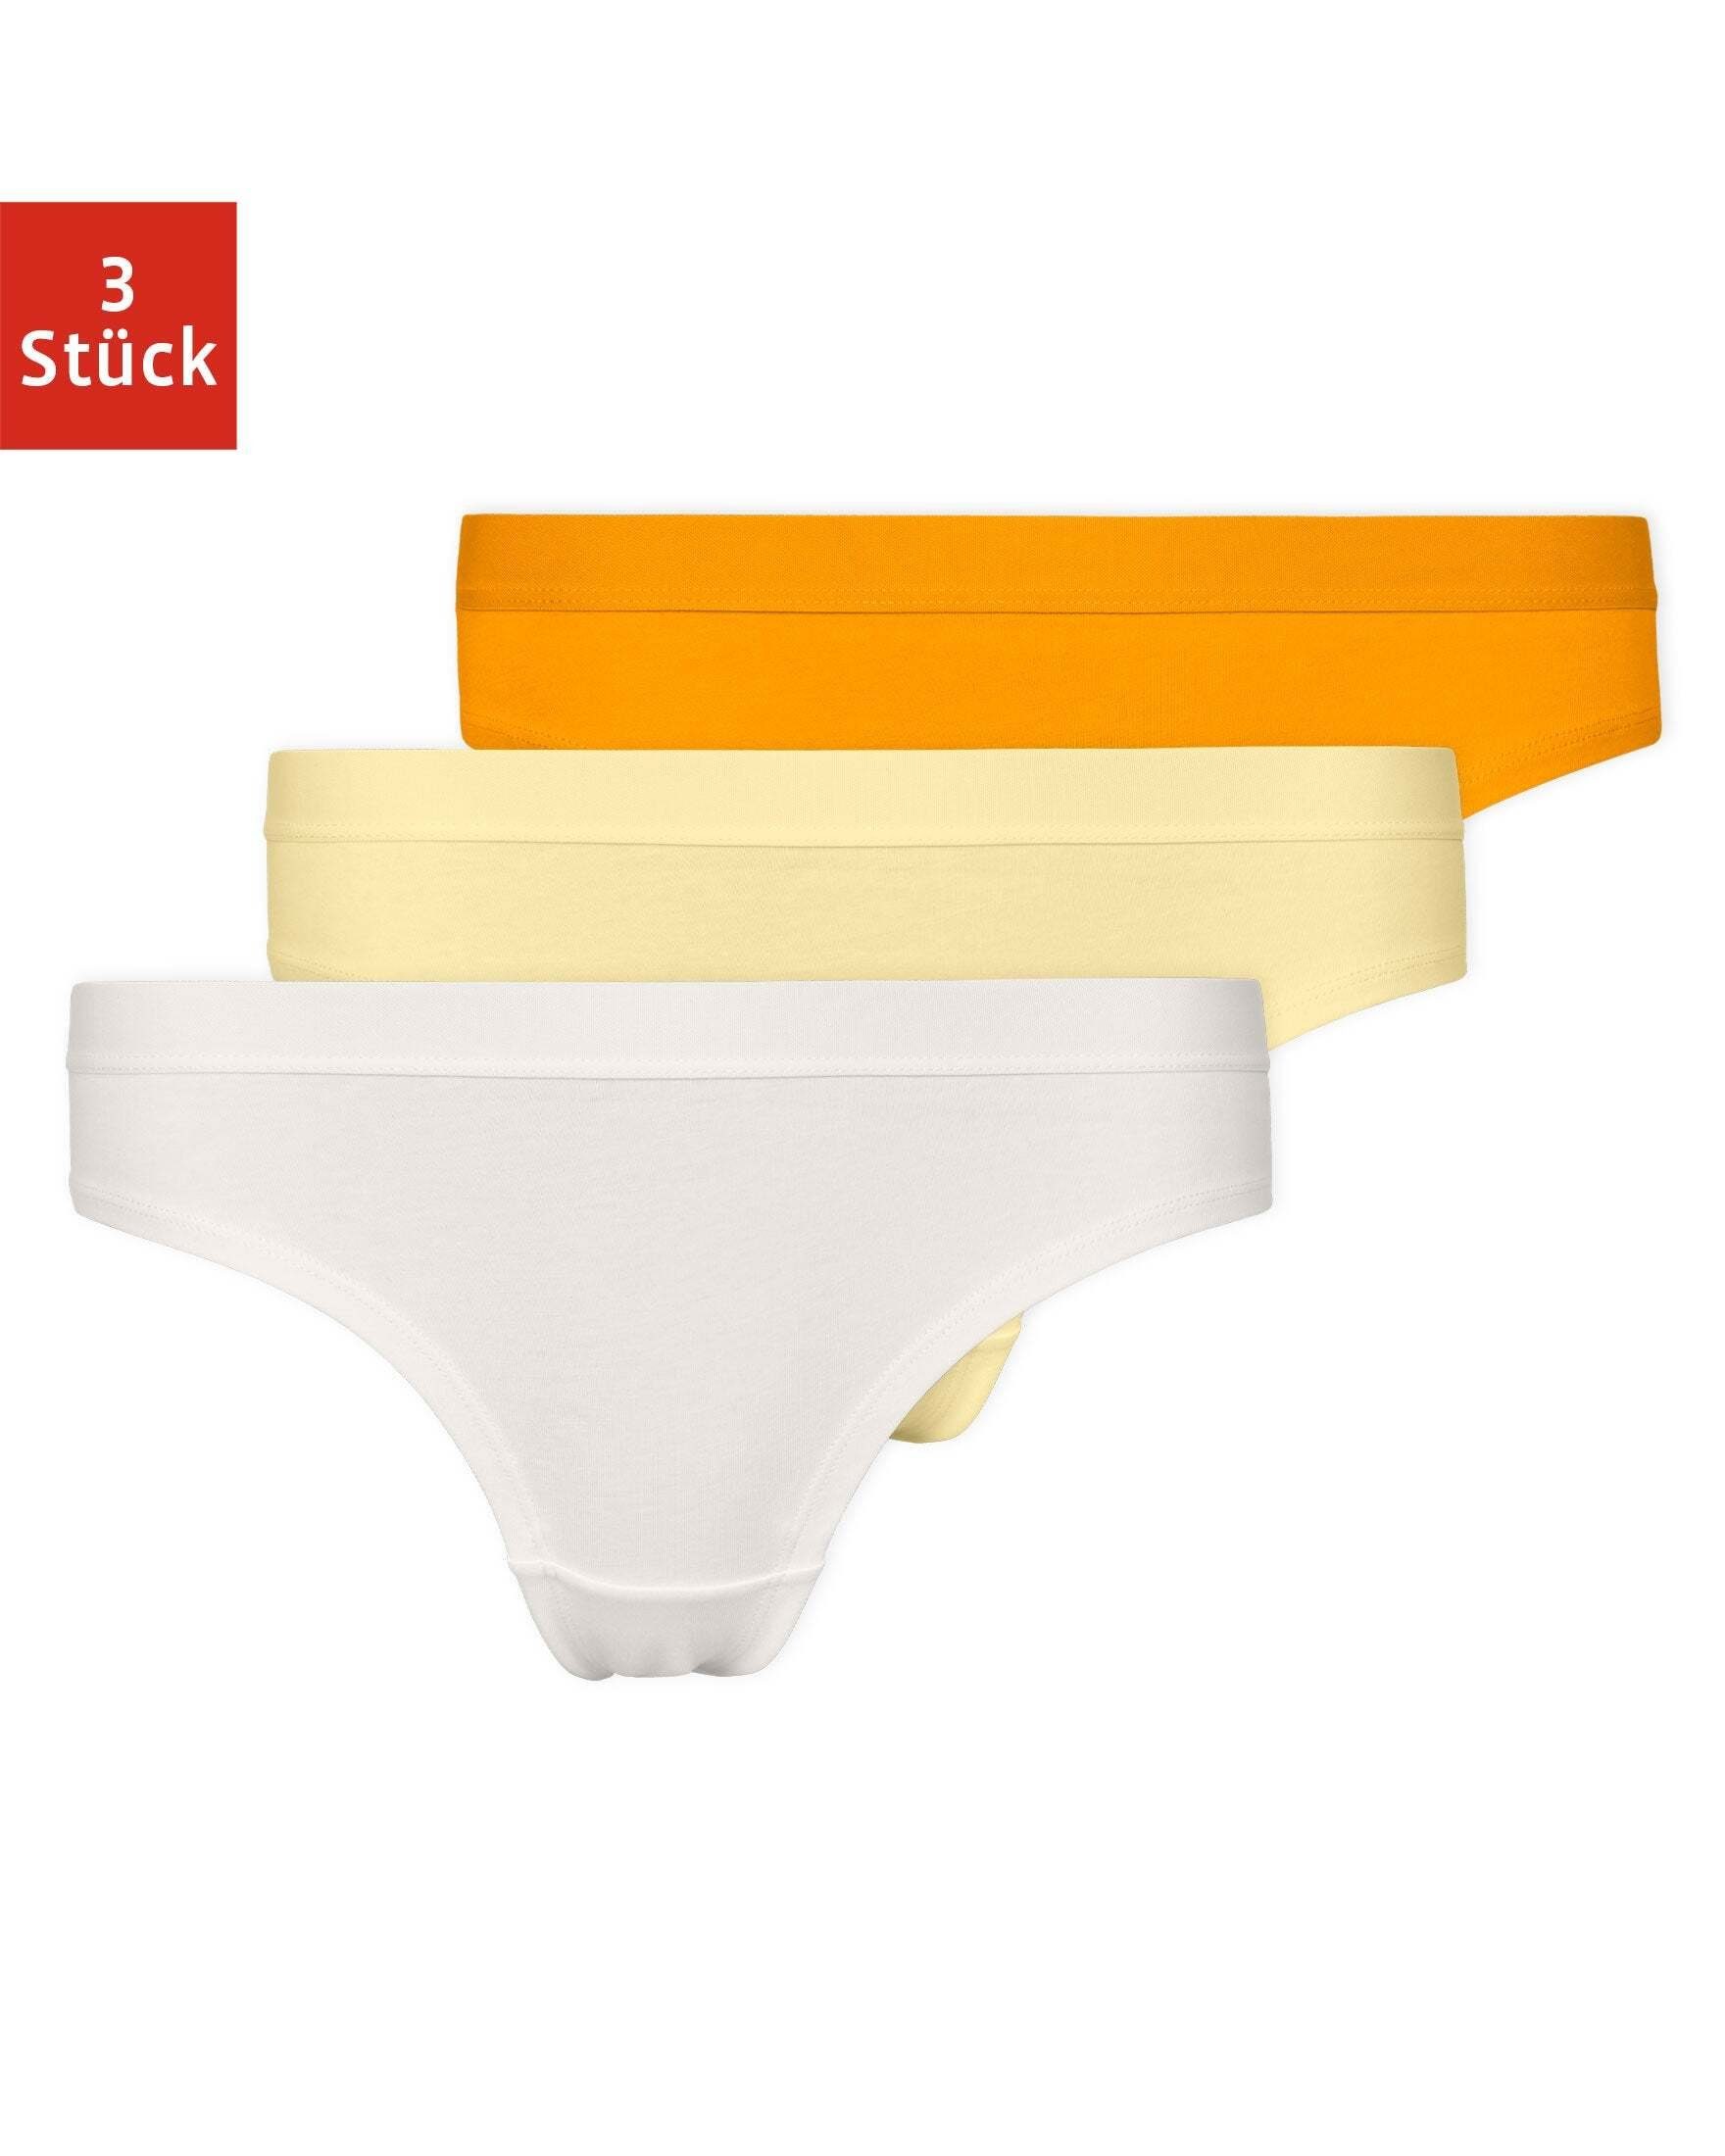 Damen Body gelb Spitze  Stretch Unterhemd Slip Unterhose Microfaser Shape 